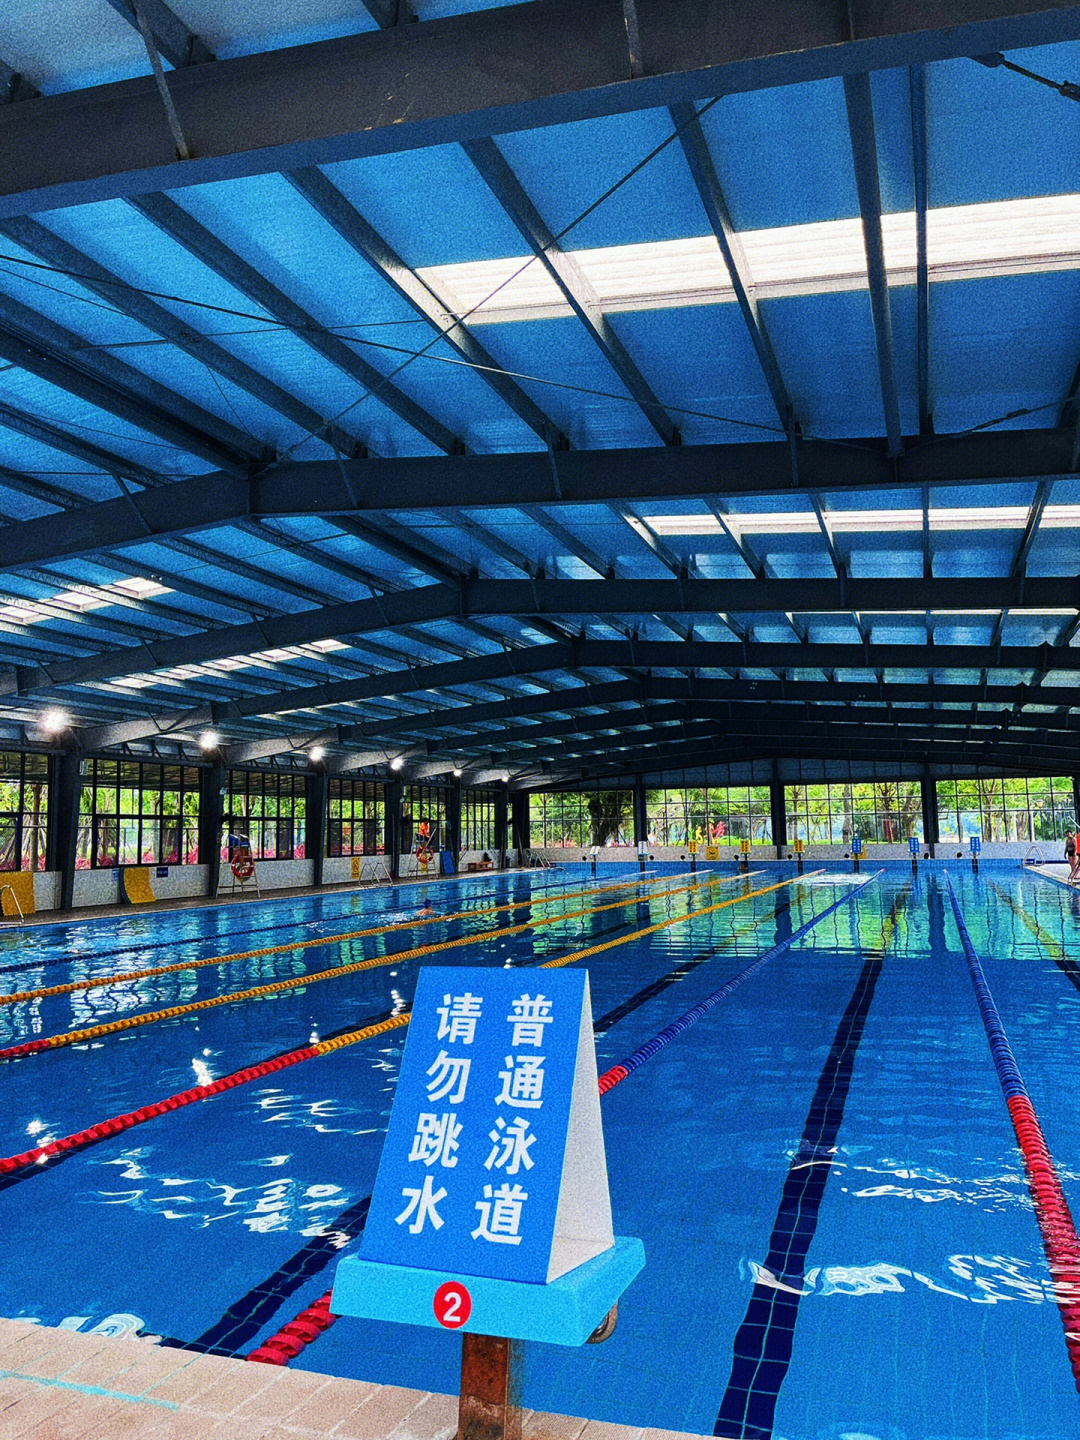 中联运动公园游泳馆图片